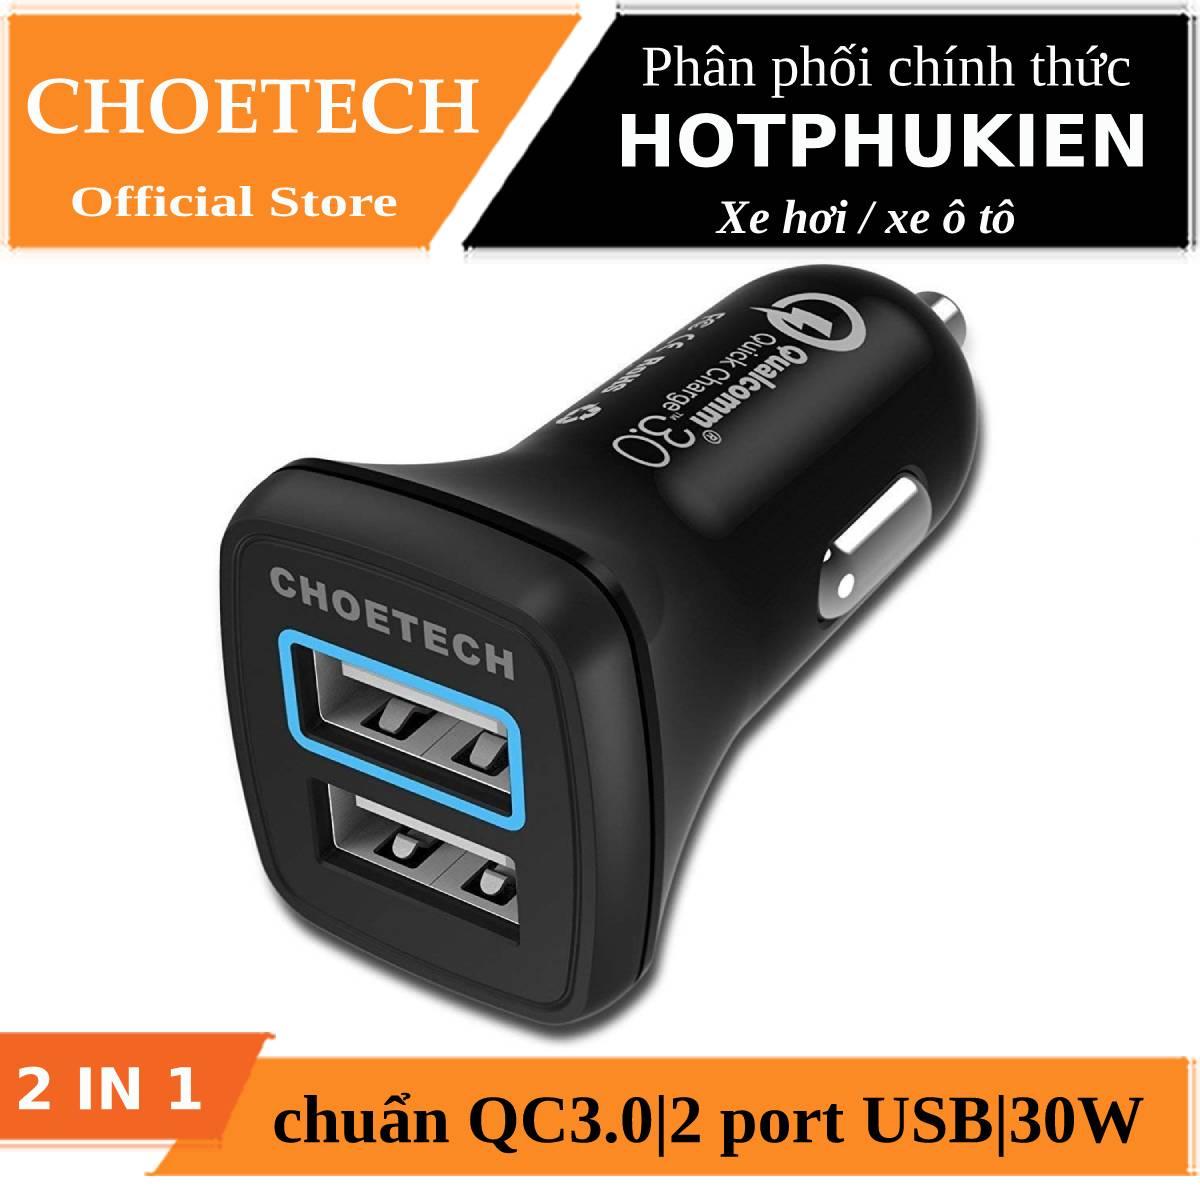 Tẩu củ sạc nhanh dành cho xe hơi ô tô 2 cổng USB hiệu CHOETECH C0051